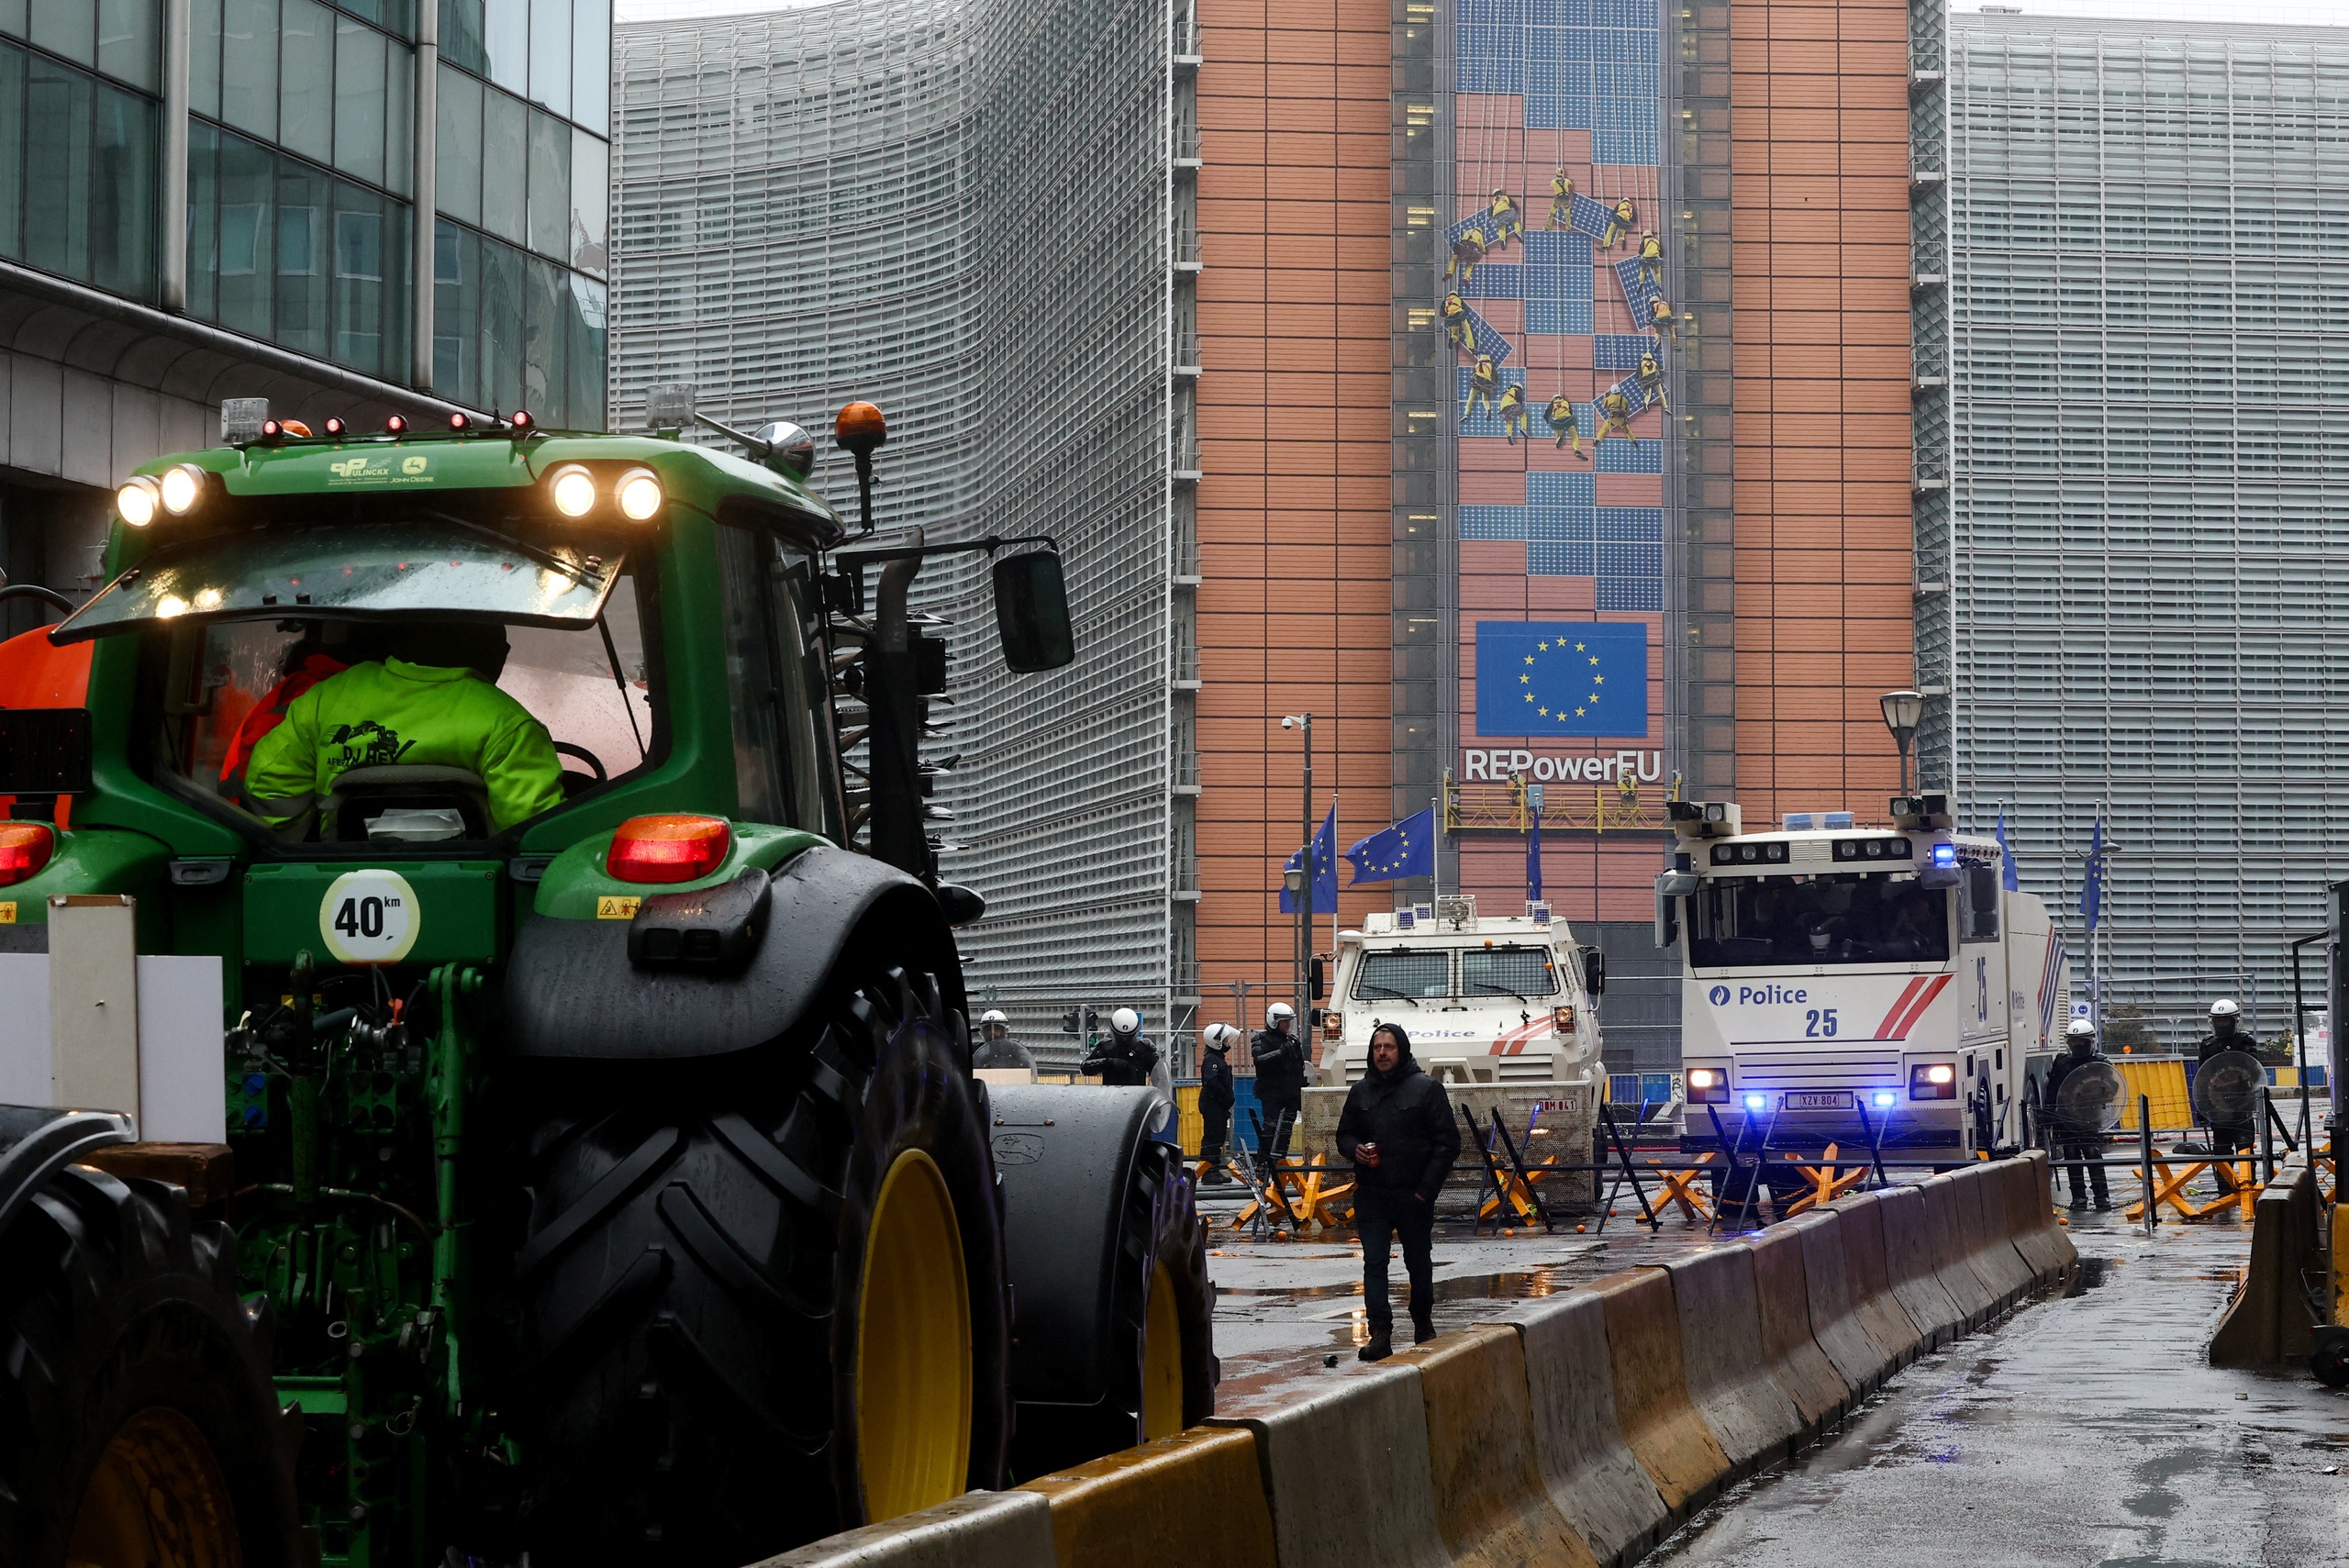 Khói lửa giữa 'thủ đô châu Âu' khi nông dân biểu tình- Ảnh 1.